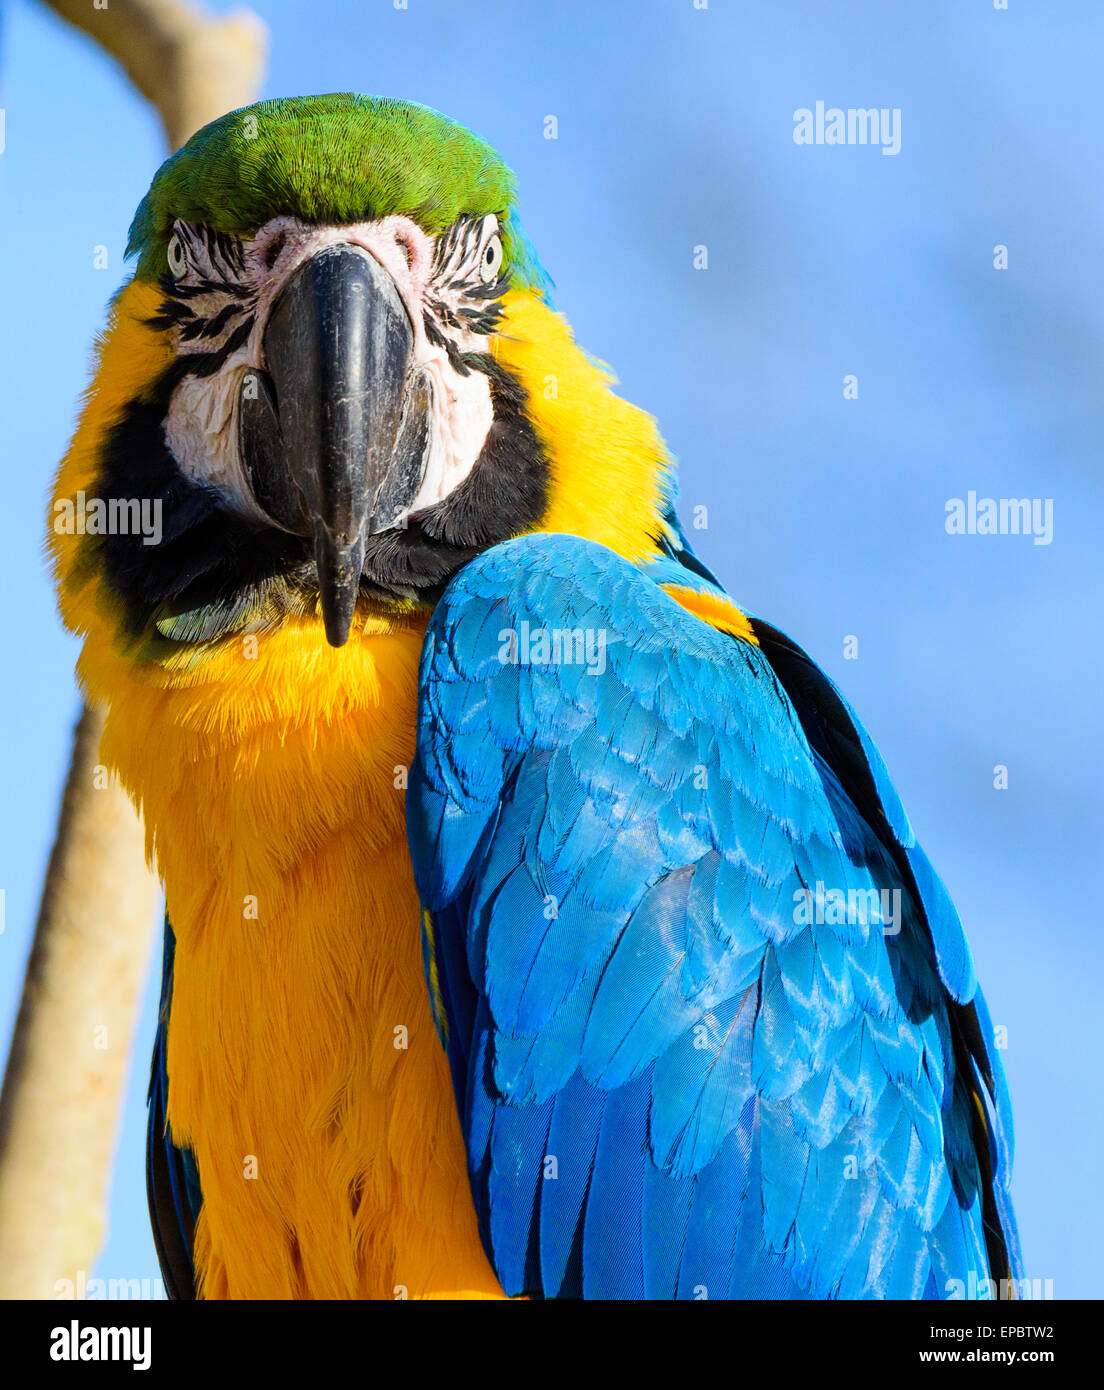 Gold et Blue Macaw Parrot à la caméra de manière intense Banque D'Images